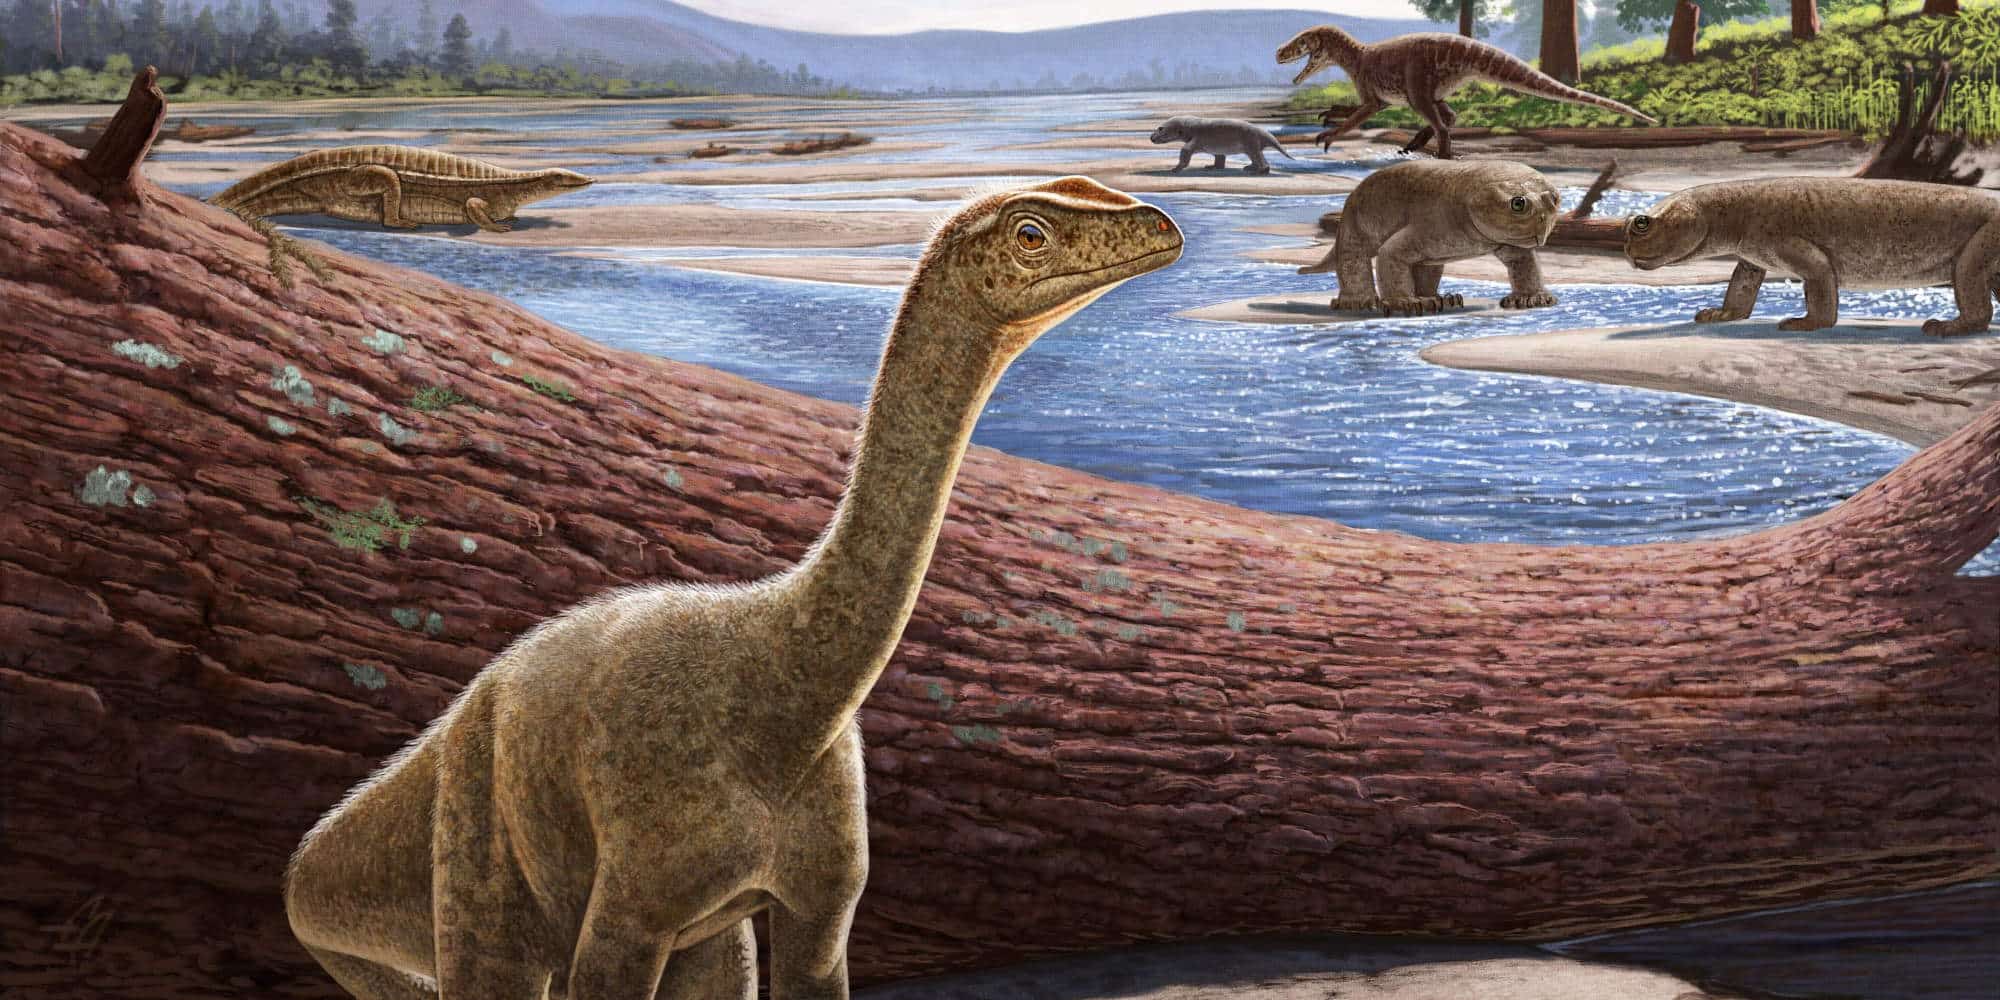 Μια διεθνής ομάδα παλαιοντολόγων ανακάλυψε και «βάφτισε» έναν άγνωστο έως τώρα πολύ πρώιμο δεινόσαυρο, τον Mbiresaurus raathi